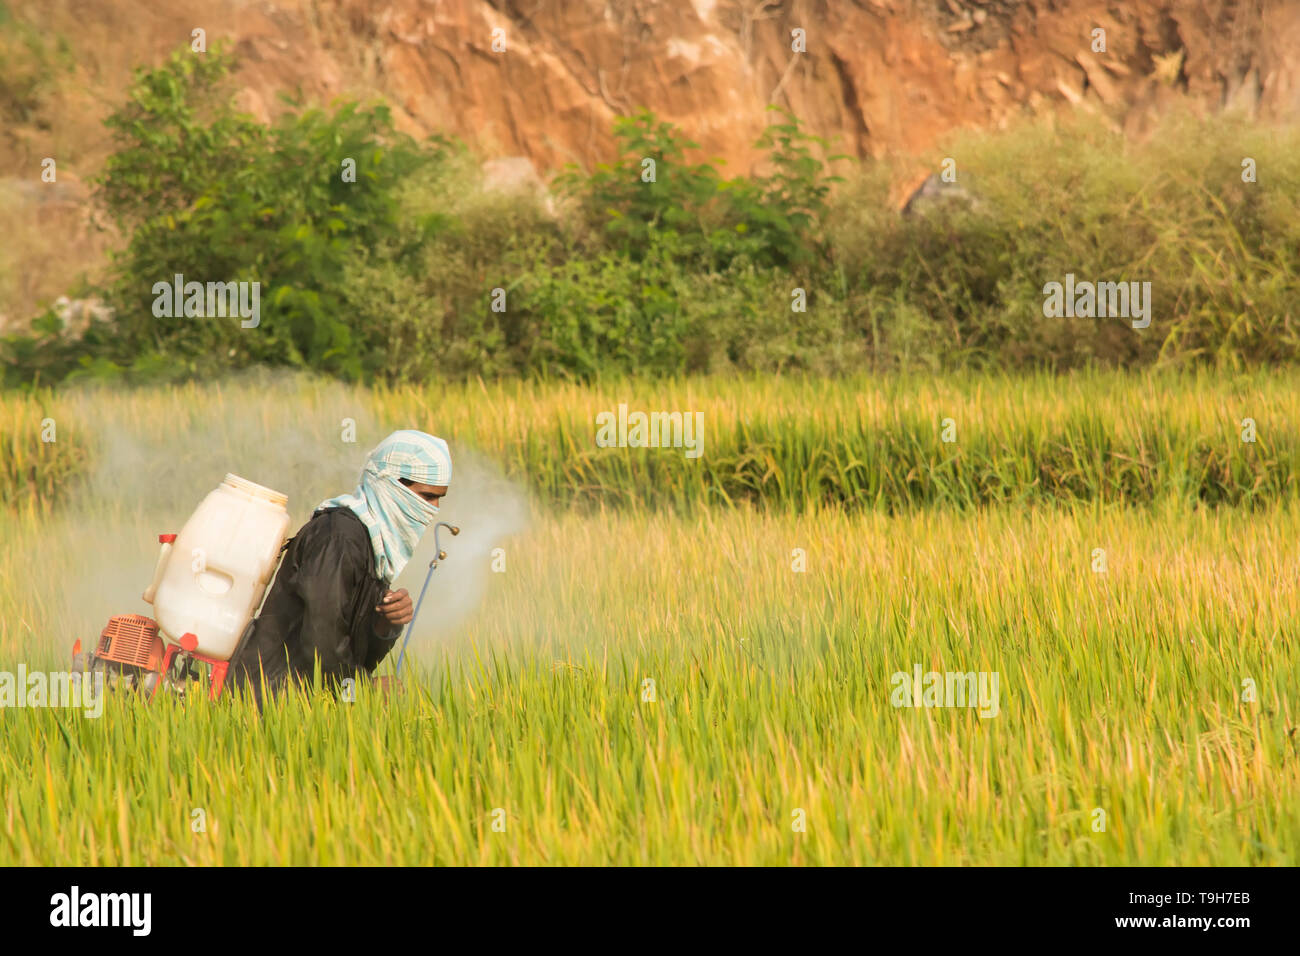 Maski, Karnataka, Inde - Décembre 2,2017 agriculteur pulvériser des pesticides dans des rizières Banque D'Images